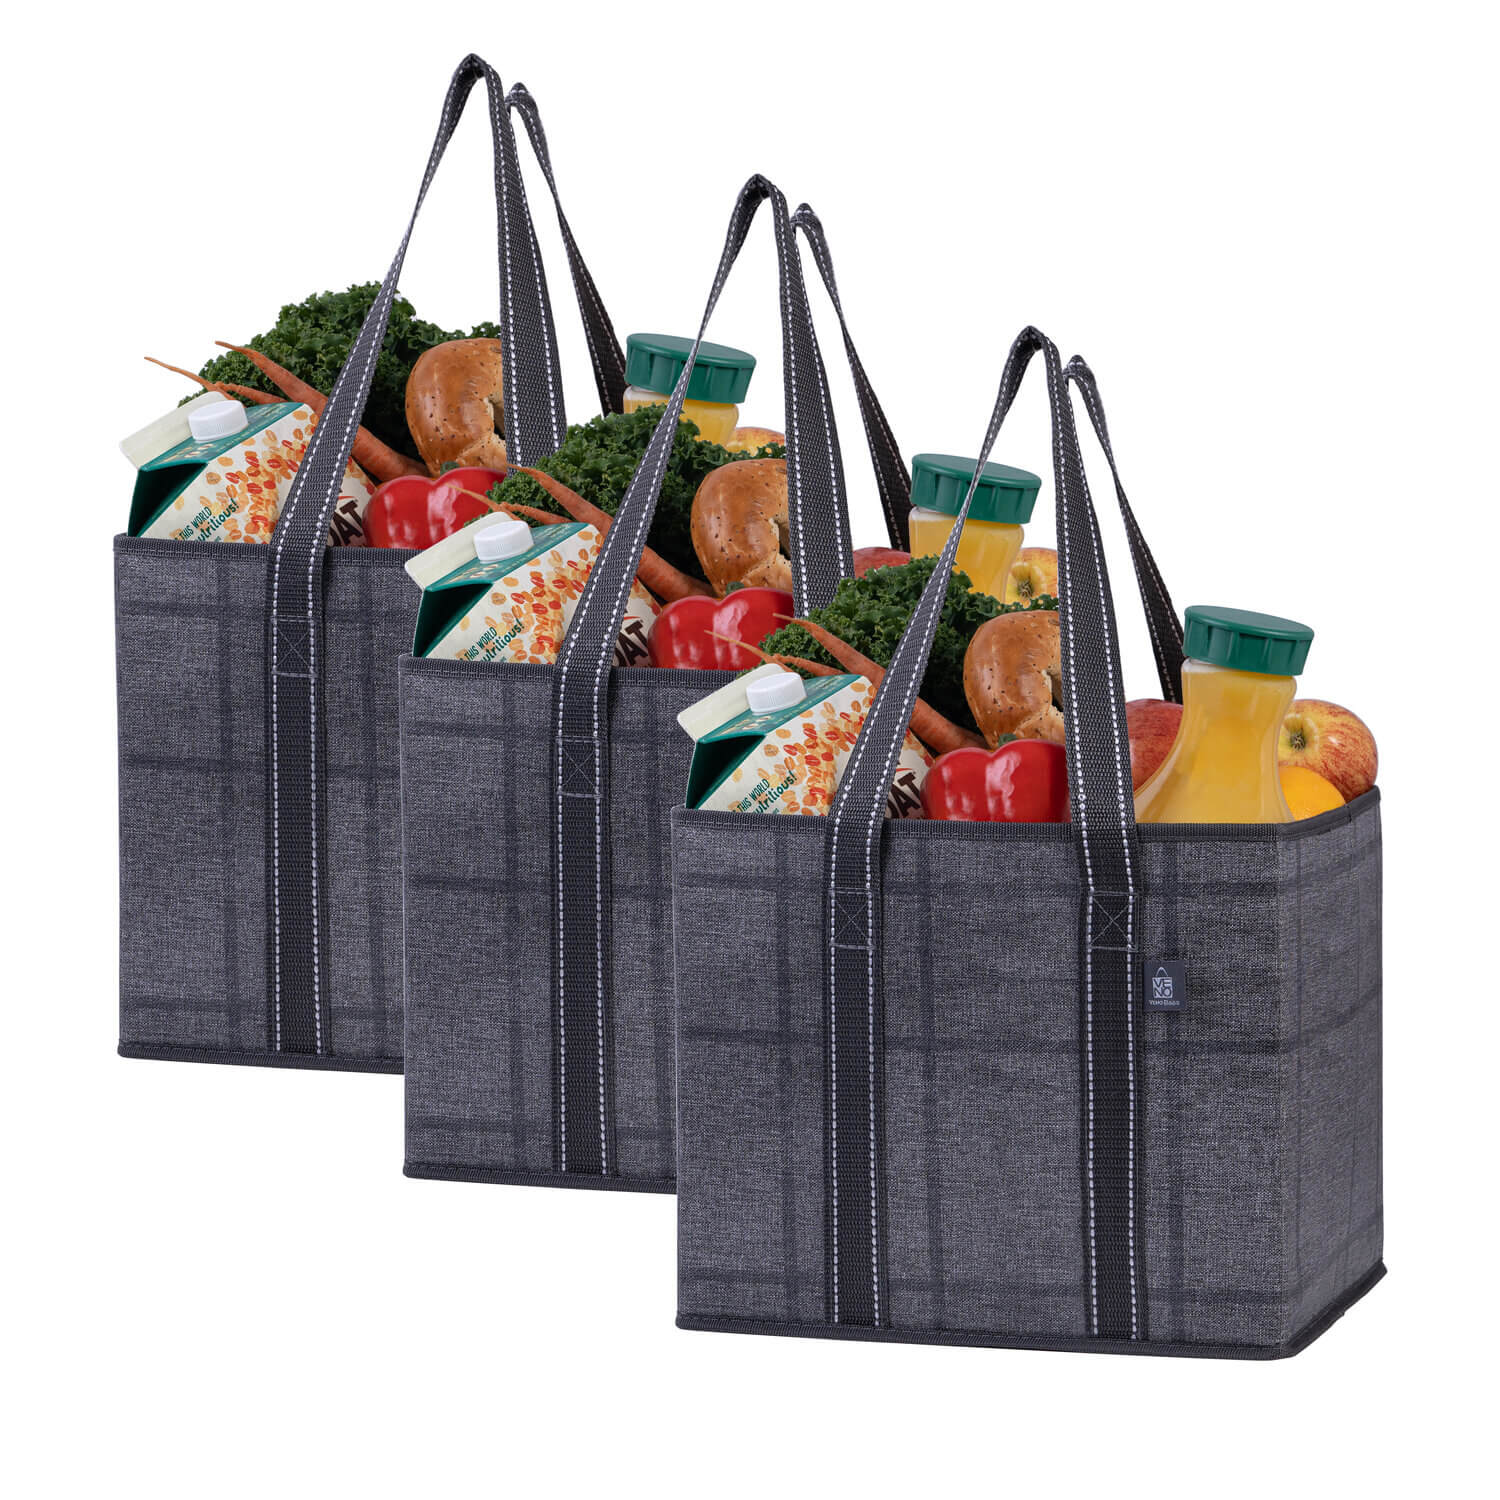 Reusable Grocery Bag Foldable Shopping Bags Tote Bag Portable Storage Bag